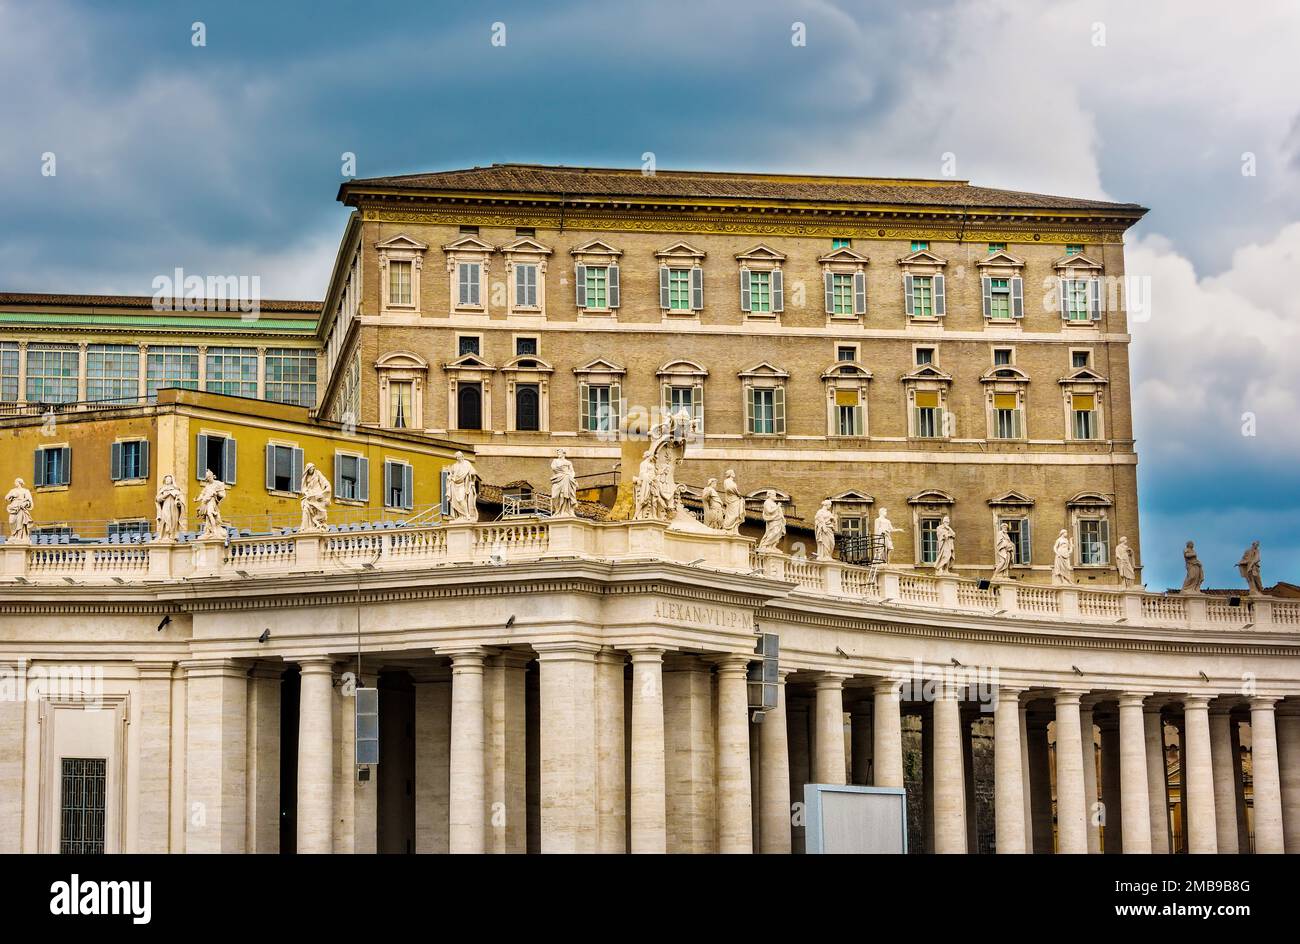 Città del Vaticano, Stato della Città del Vaticano - 10 giugno 2016: Il Palazzo Apostolico, residenza ufficiale del Papa, noto anche come Palazzo Papale. Foto Stock